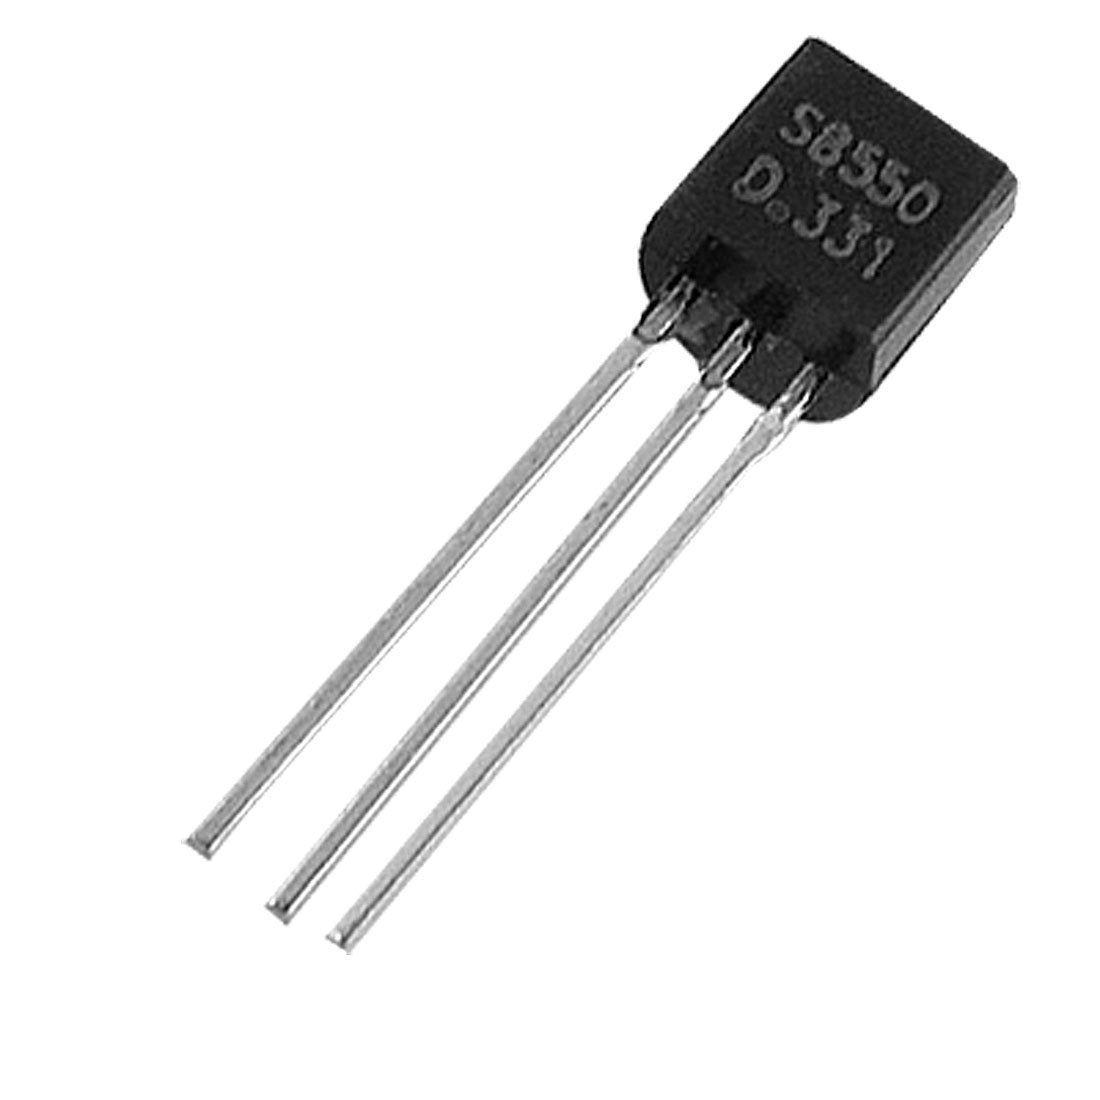 5F PNP Silicon Transistor S8550 (3PCS)